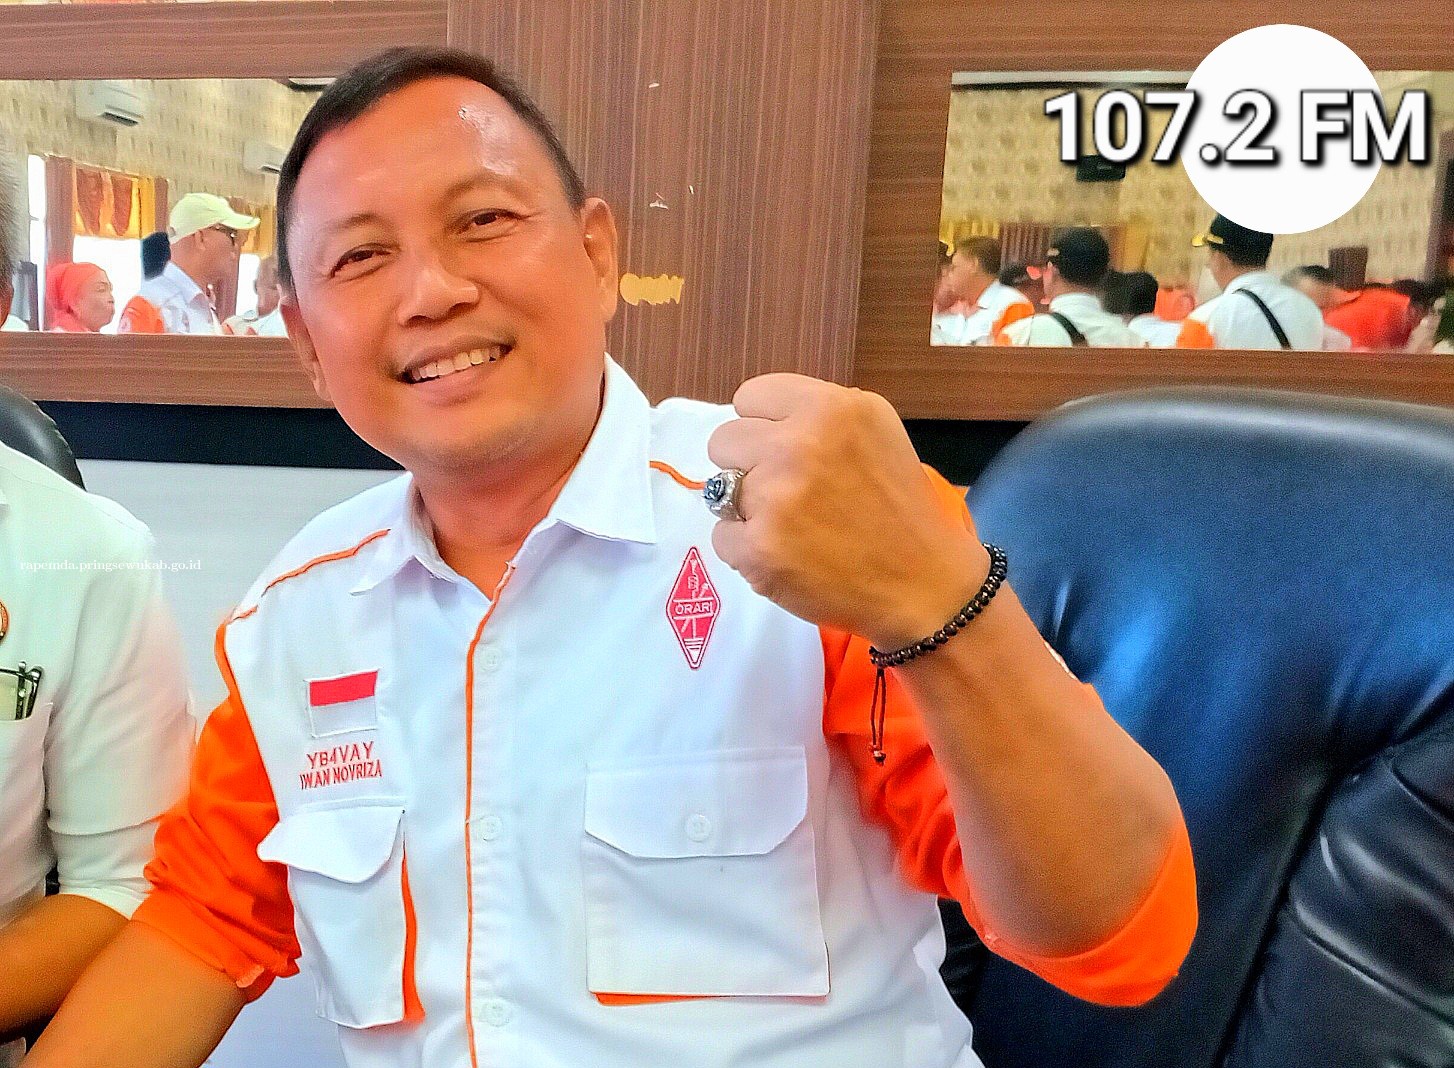 Iwan Novriza Kembali Pimpin ORARI Daerah Lampung 